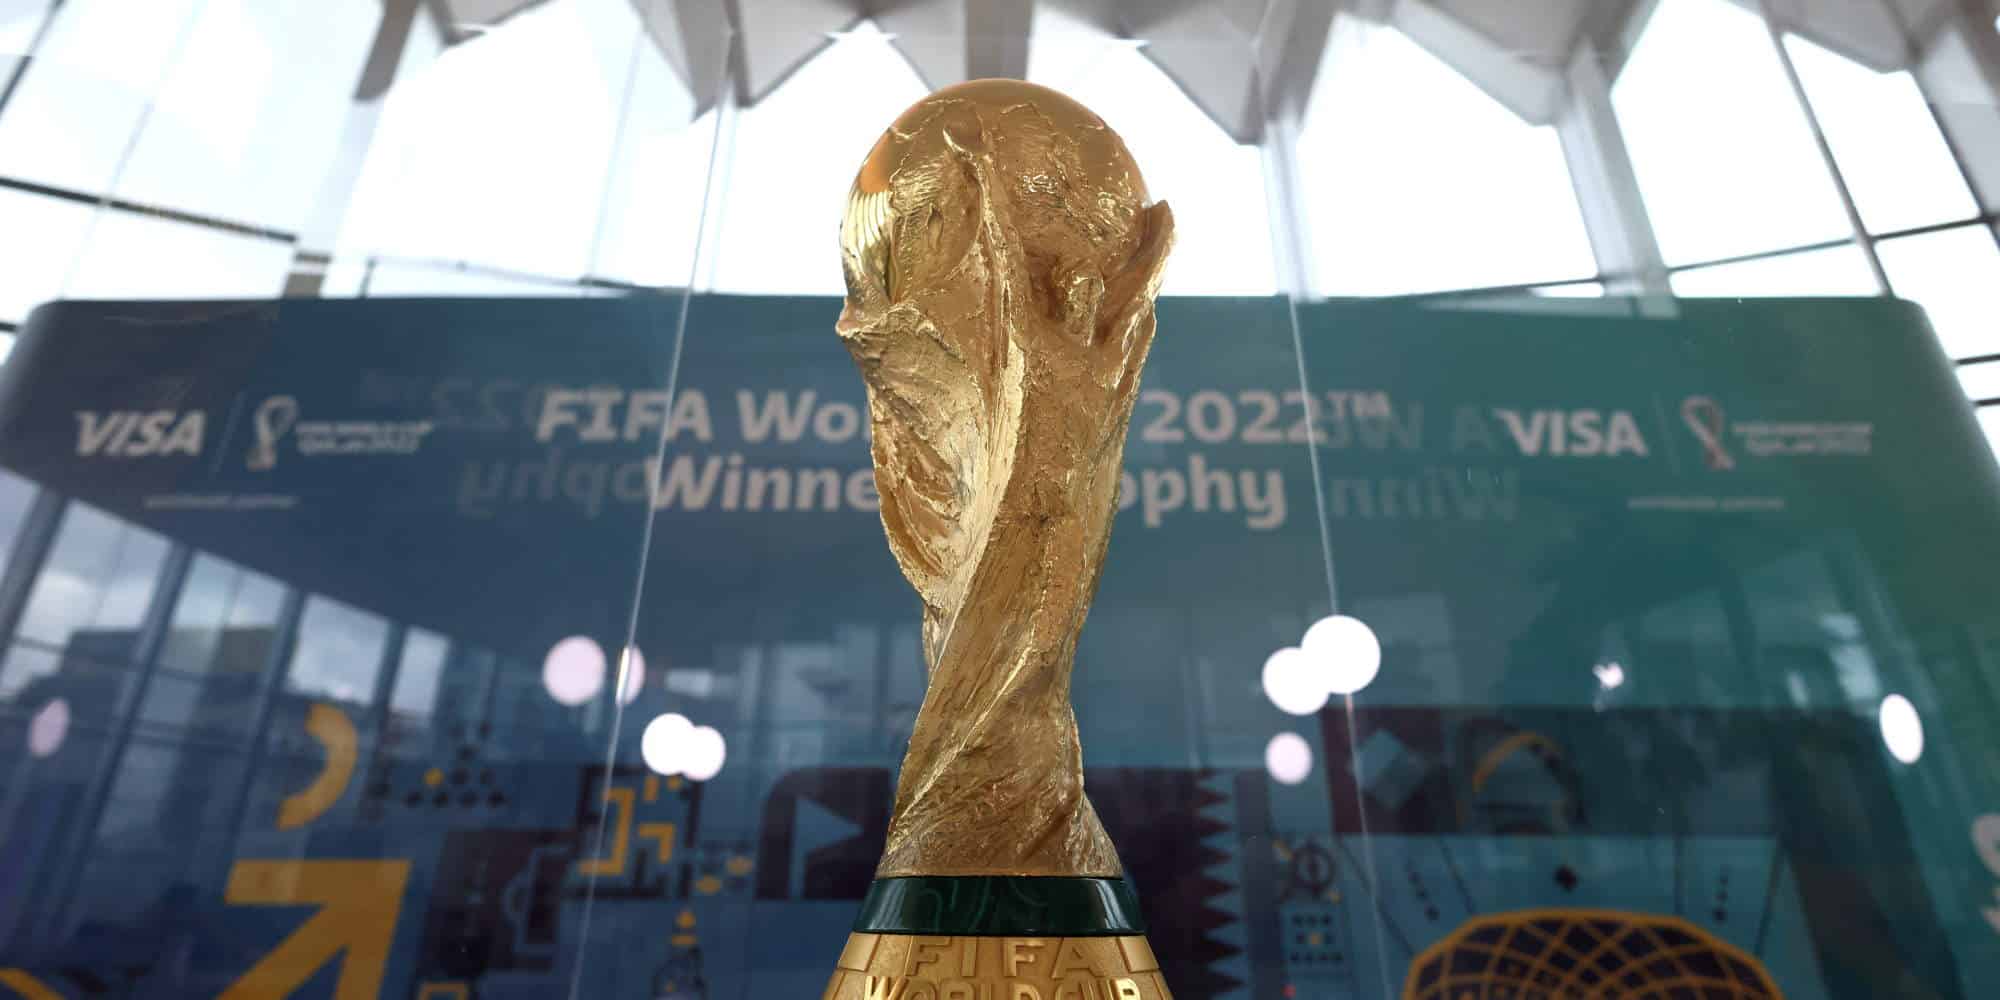 Το τρόπαιο του παγκοσμίου πρωταθλήματος ποδοσφαίρου, με την υπογραφή της FIFA